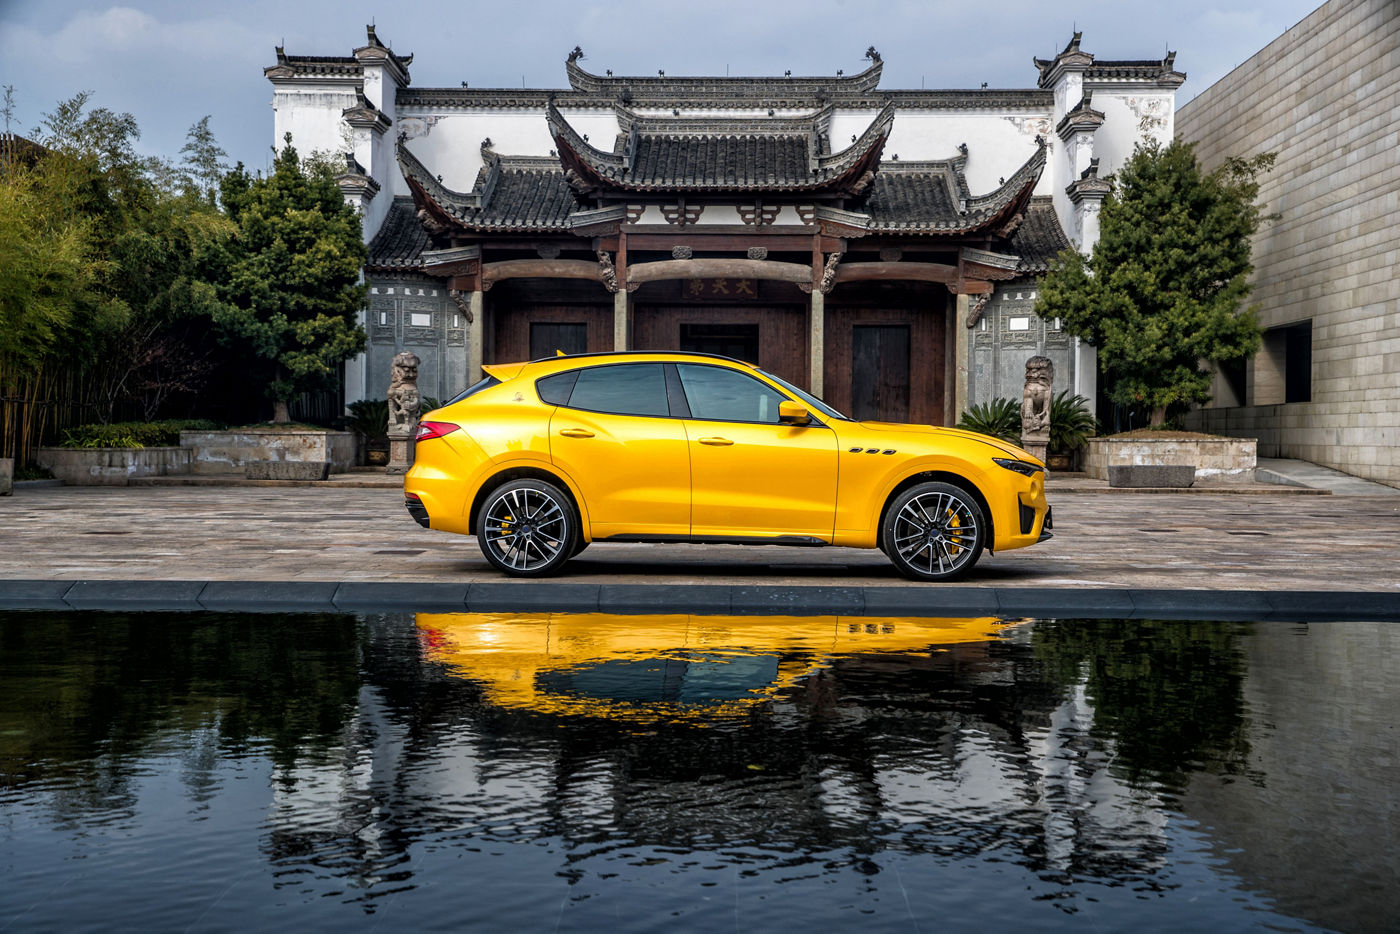 Maserati Levante Trofeo amarillo delande de un templo en Shanghái